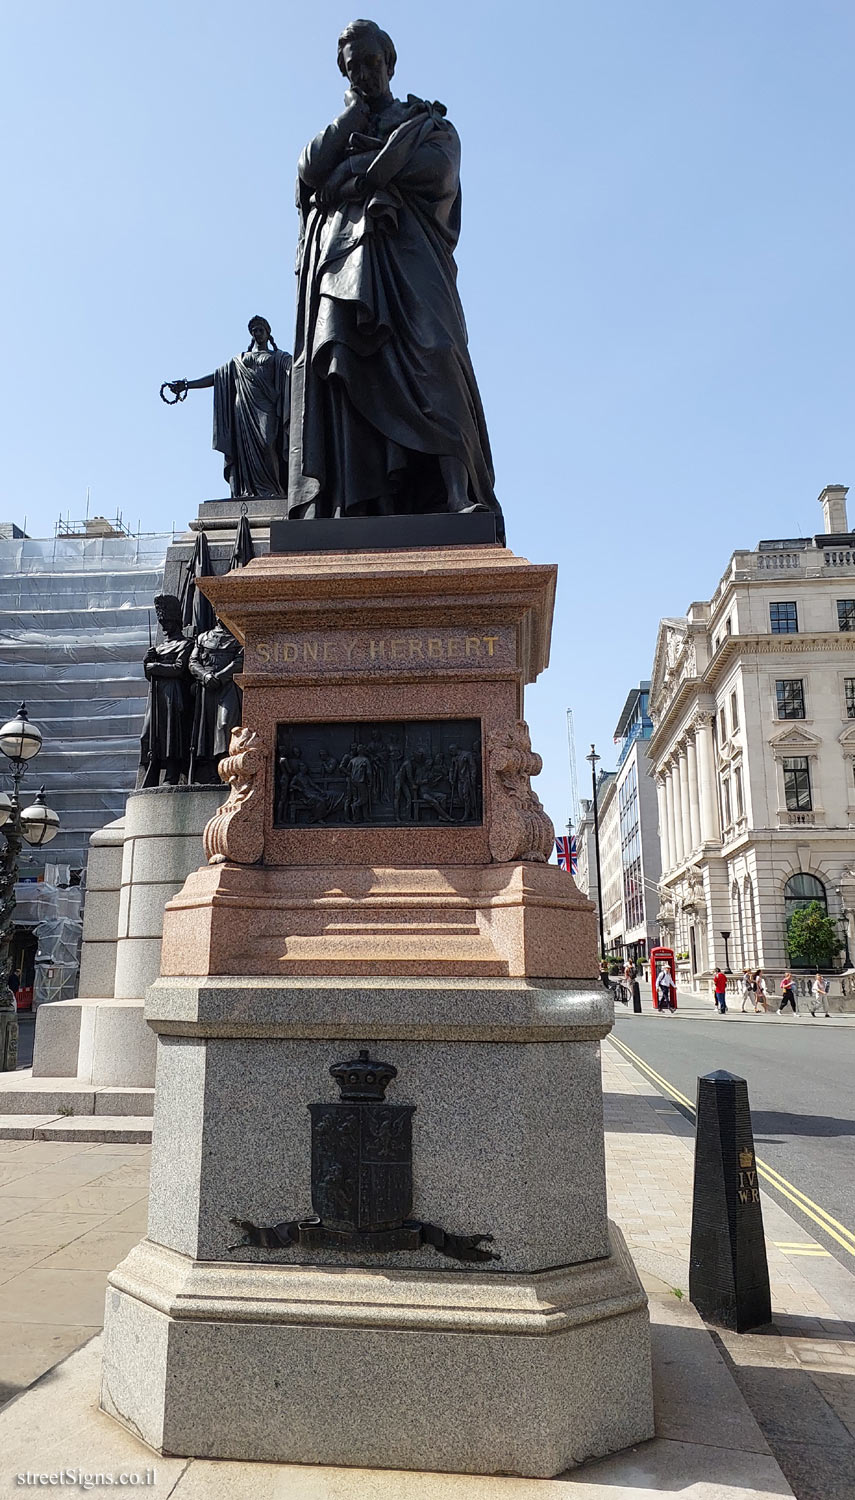 London - Statue of Sidney Herbert - 6 Waterloo Pl, St. James’s, London SW1Y 4AN, UK